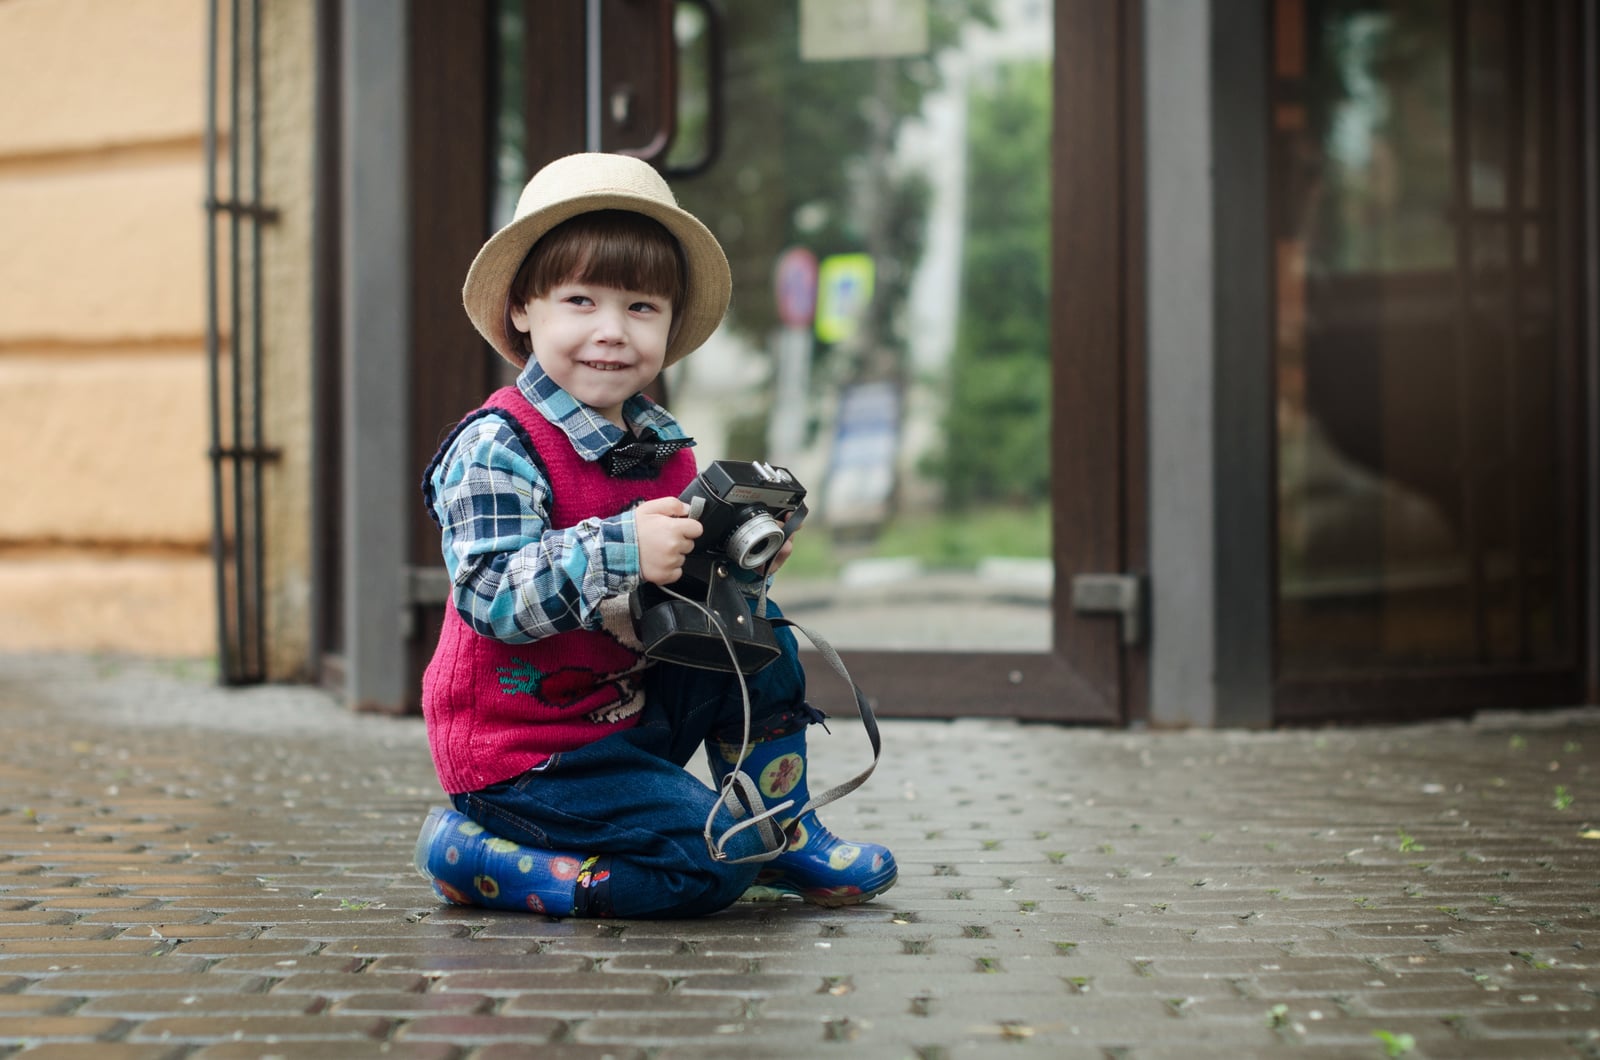 Børnefotograf - værd at vide inden I kommer i fotostudiet